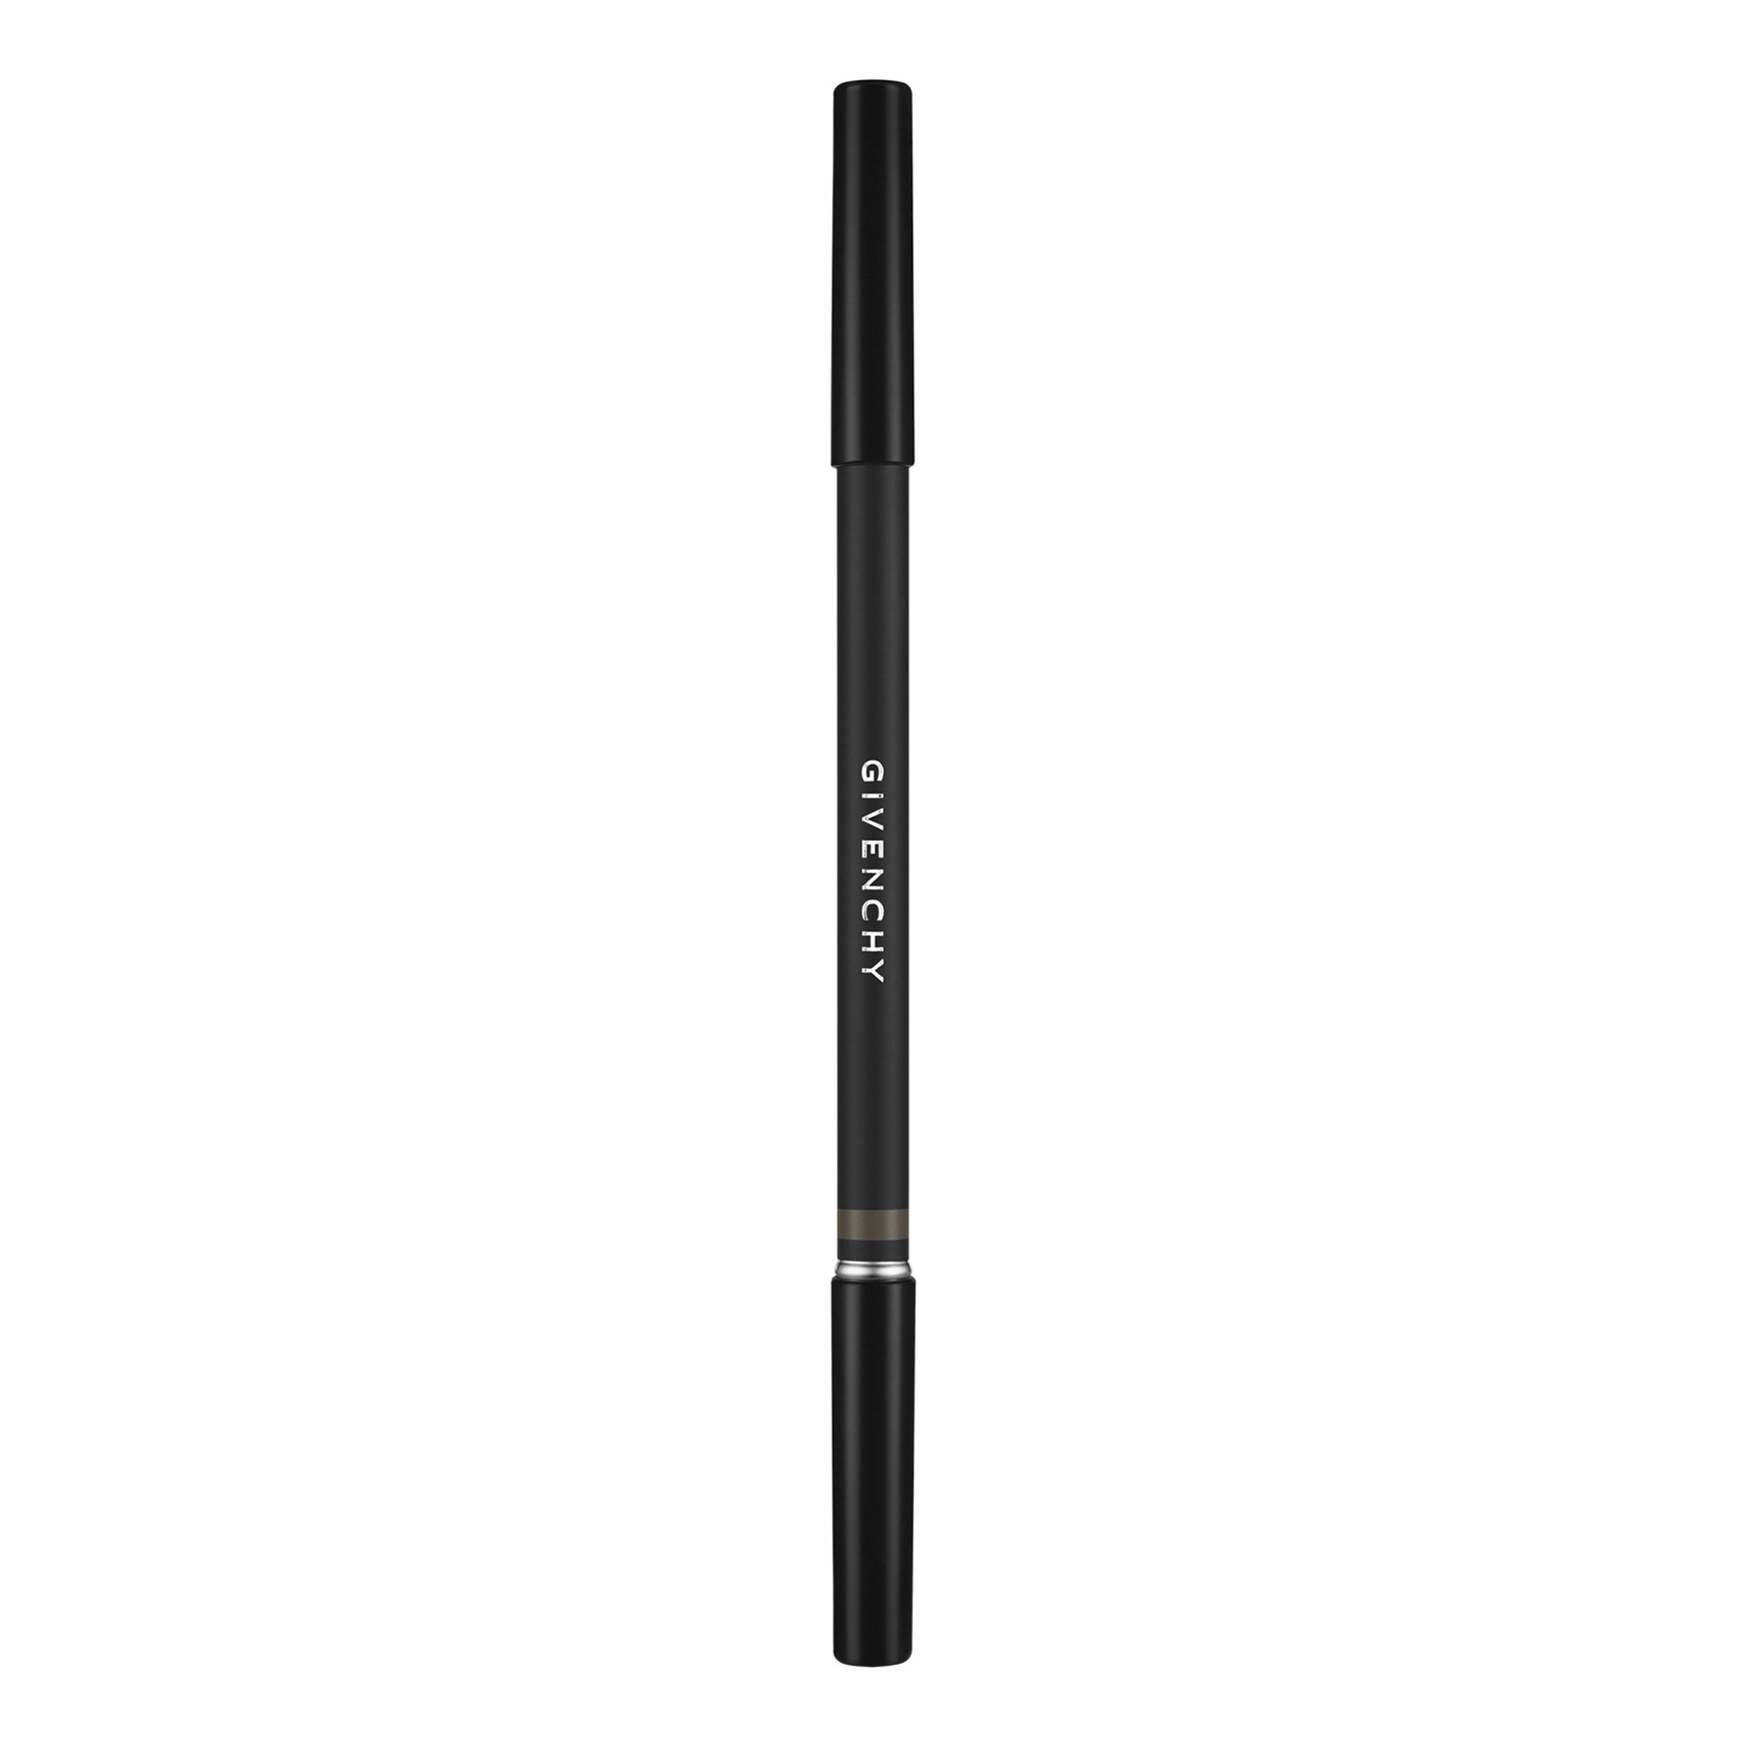 Radiant professional softline eye pencil. Giorgio Armani smooth Silk Eye Pencil. Definer Pencil Soft Black MB 21 карандаш для бровей. Карандаш для глаз Giorgio Armani. Ламель карандаш для глаз 403.